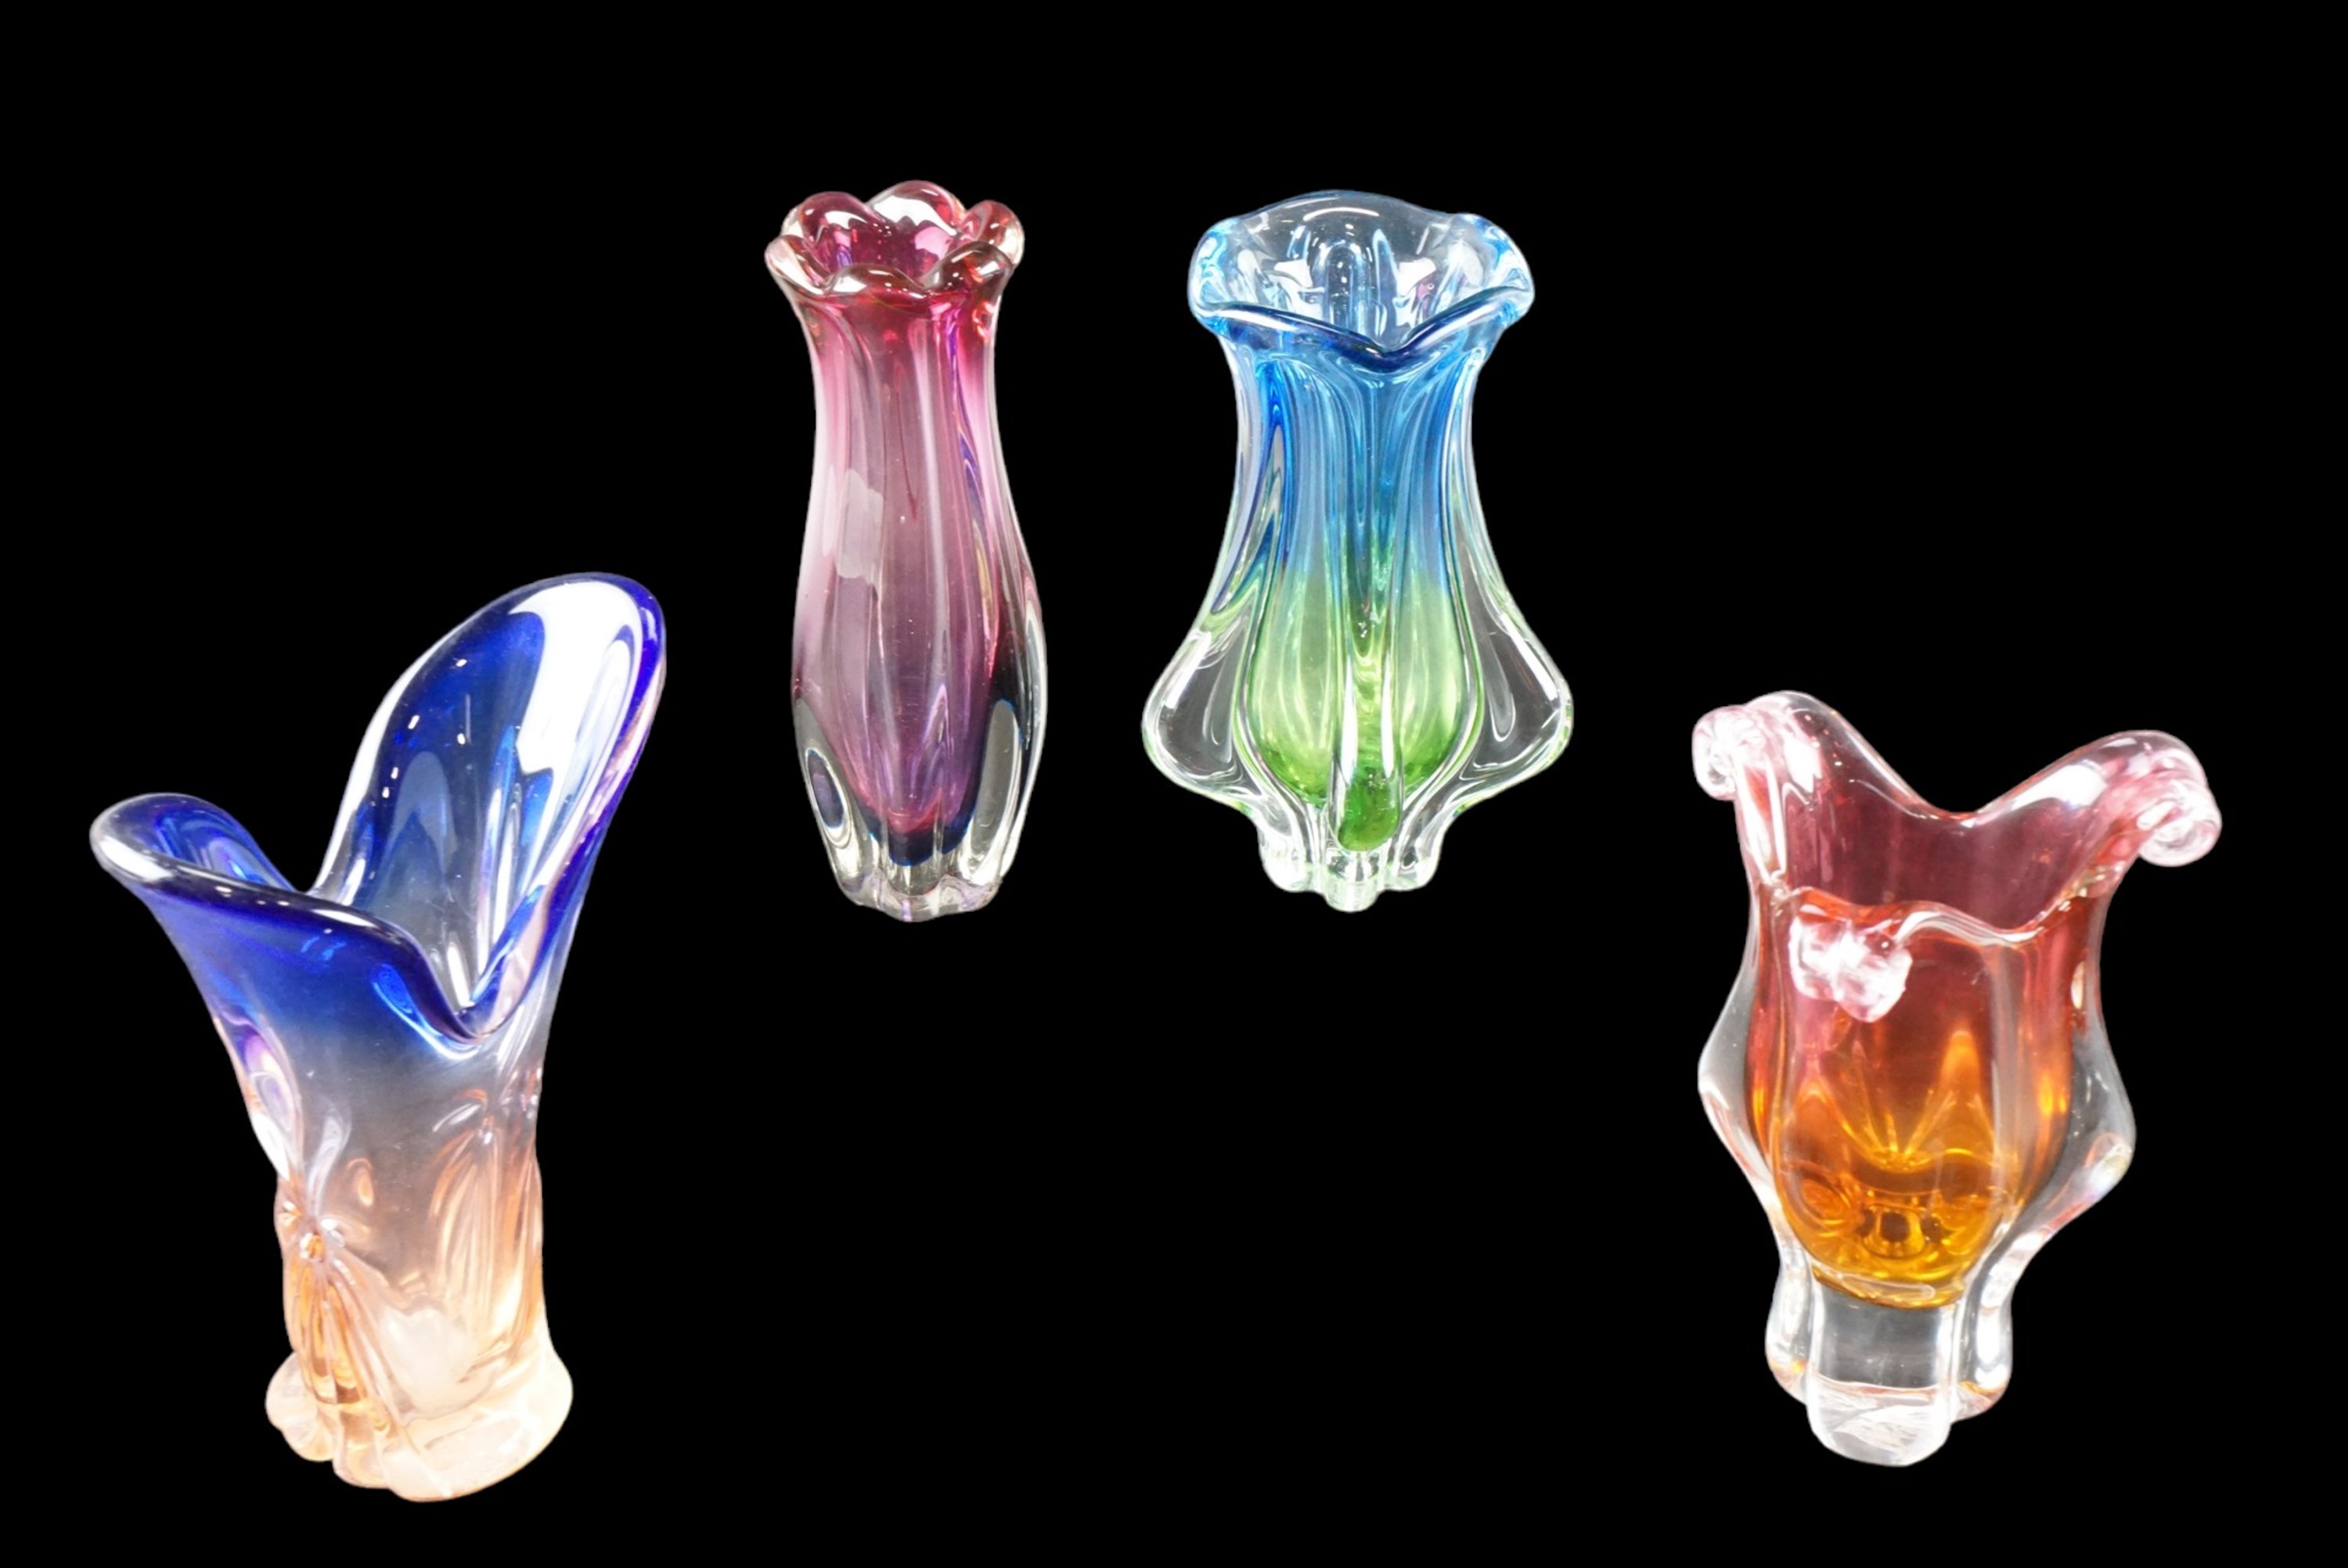 Four studio glass vases, tallest 29 cm